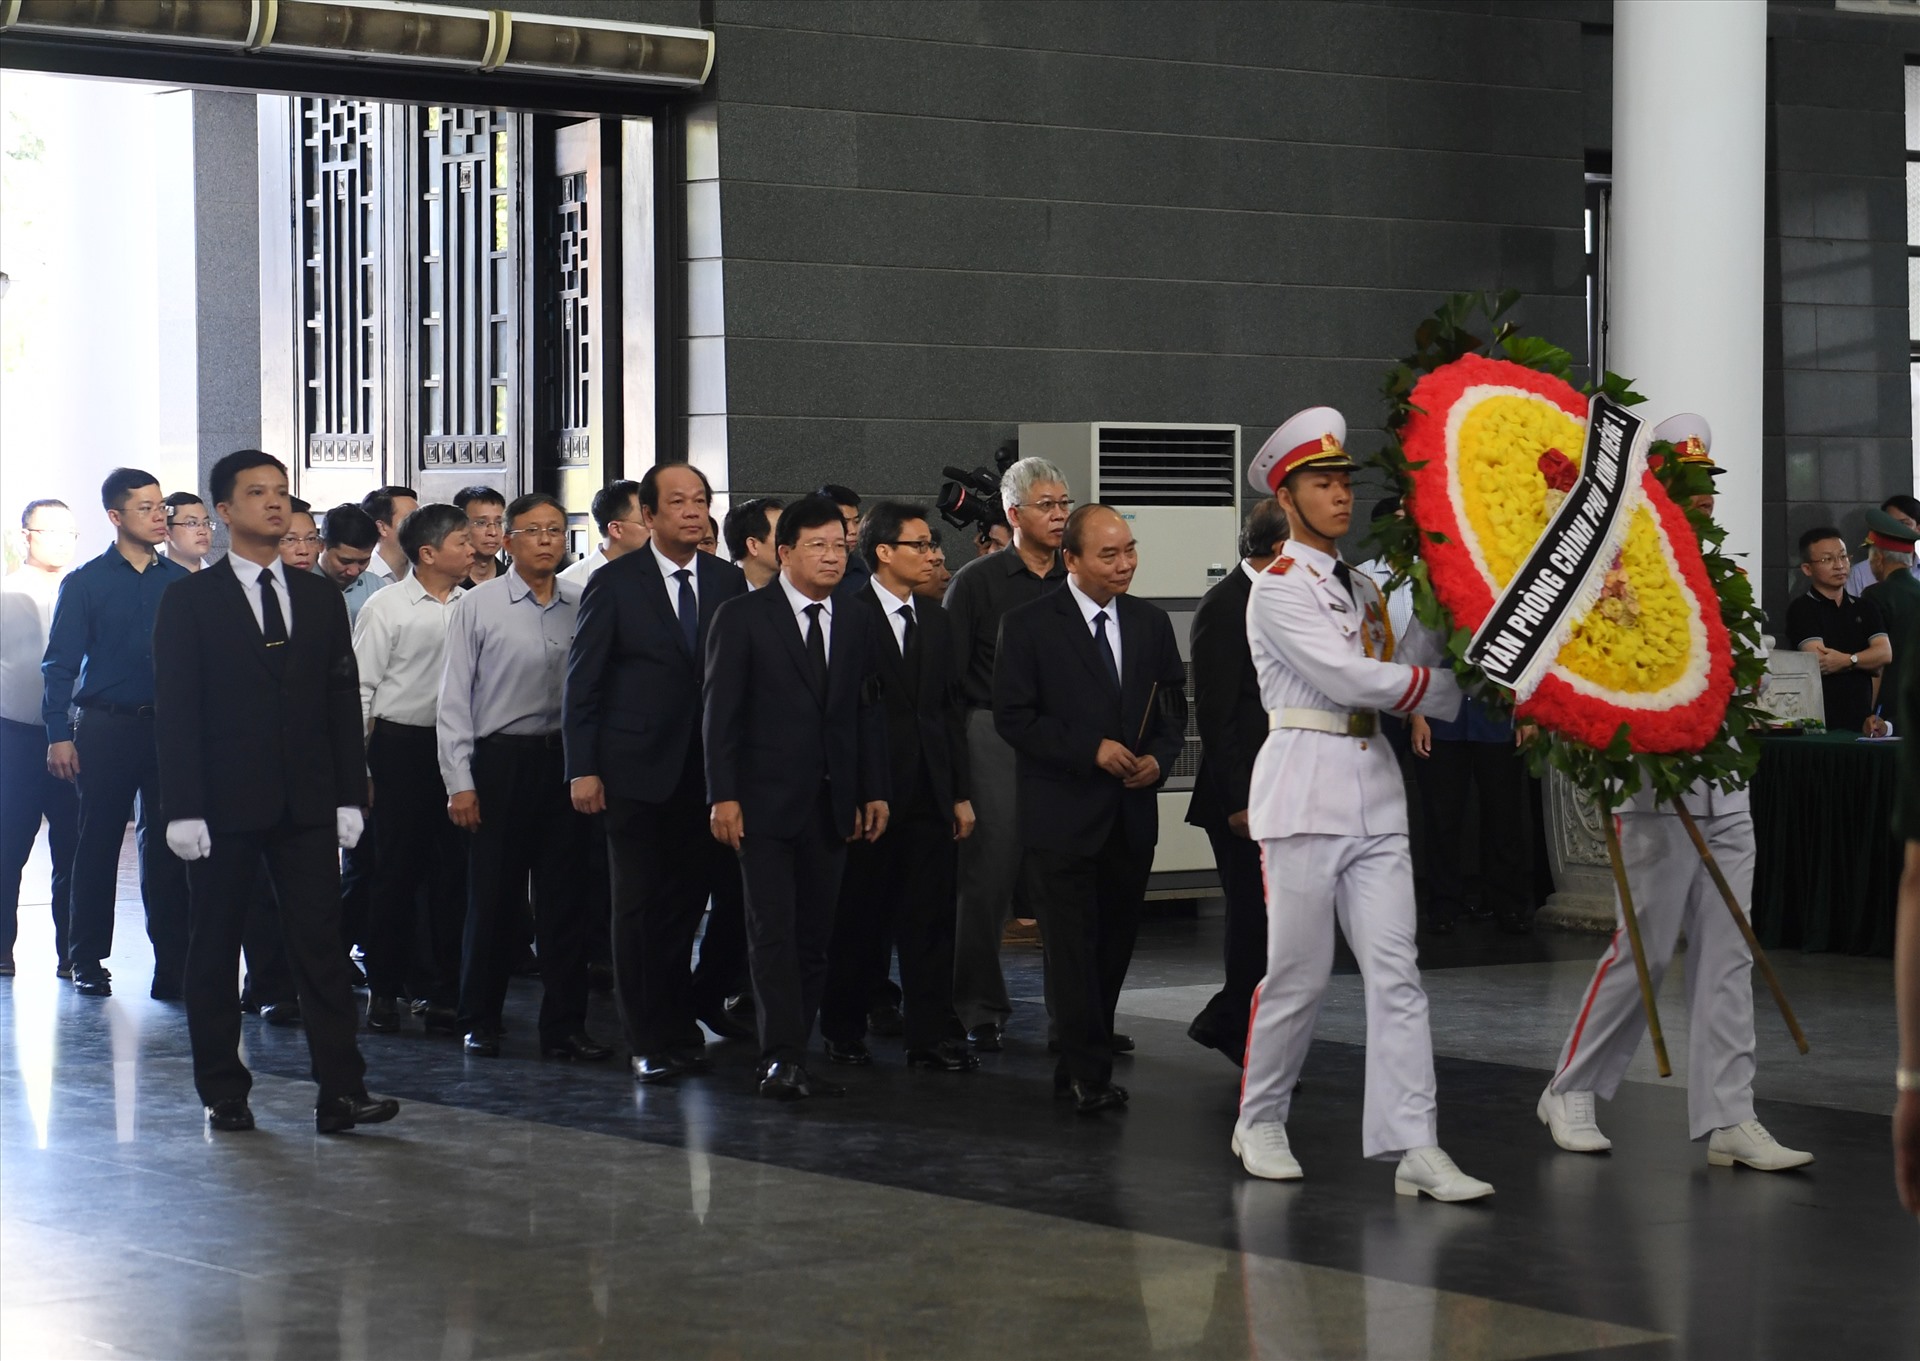 Đoàn Chính phủ do Uỷ viên Bộ chính trị, Thủ tướng Chính phủ Nguyễn Xuân Phúc dẫn đầu cùng Văn phòng Chính phủ vào viếng.